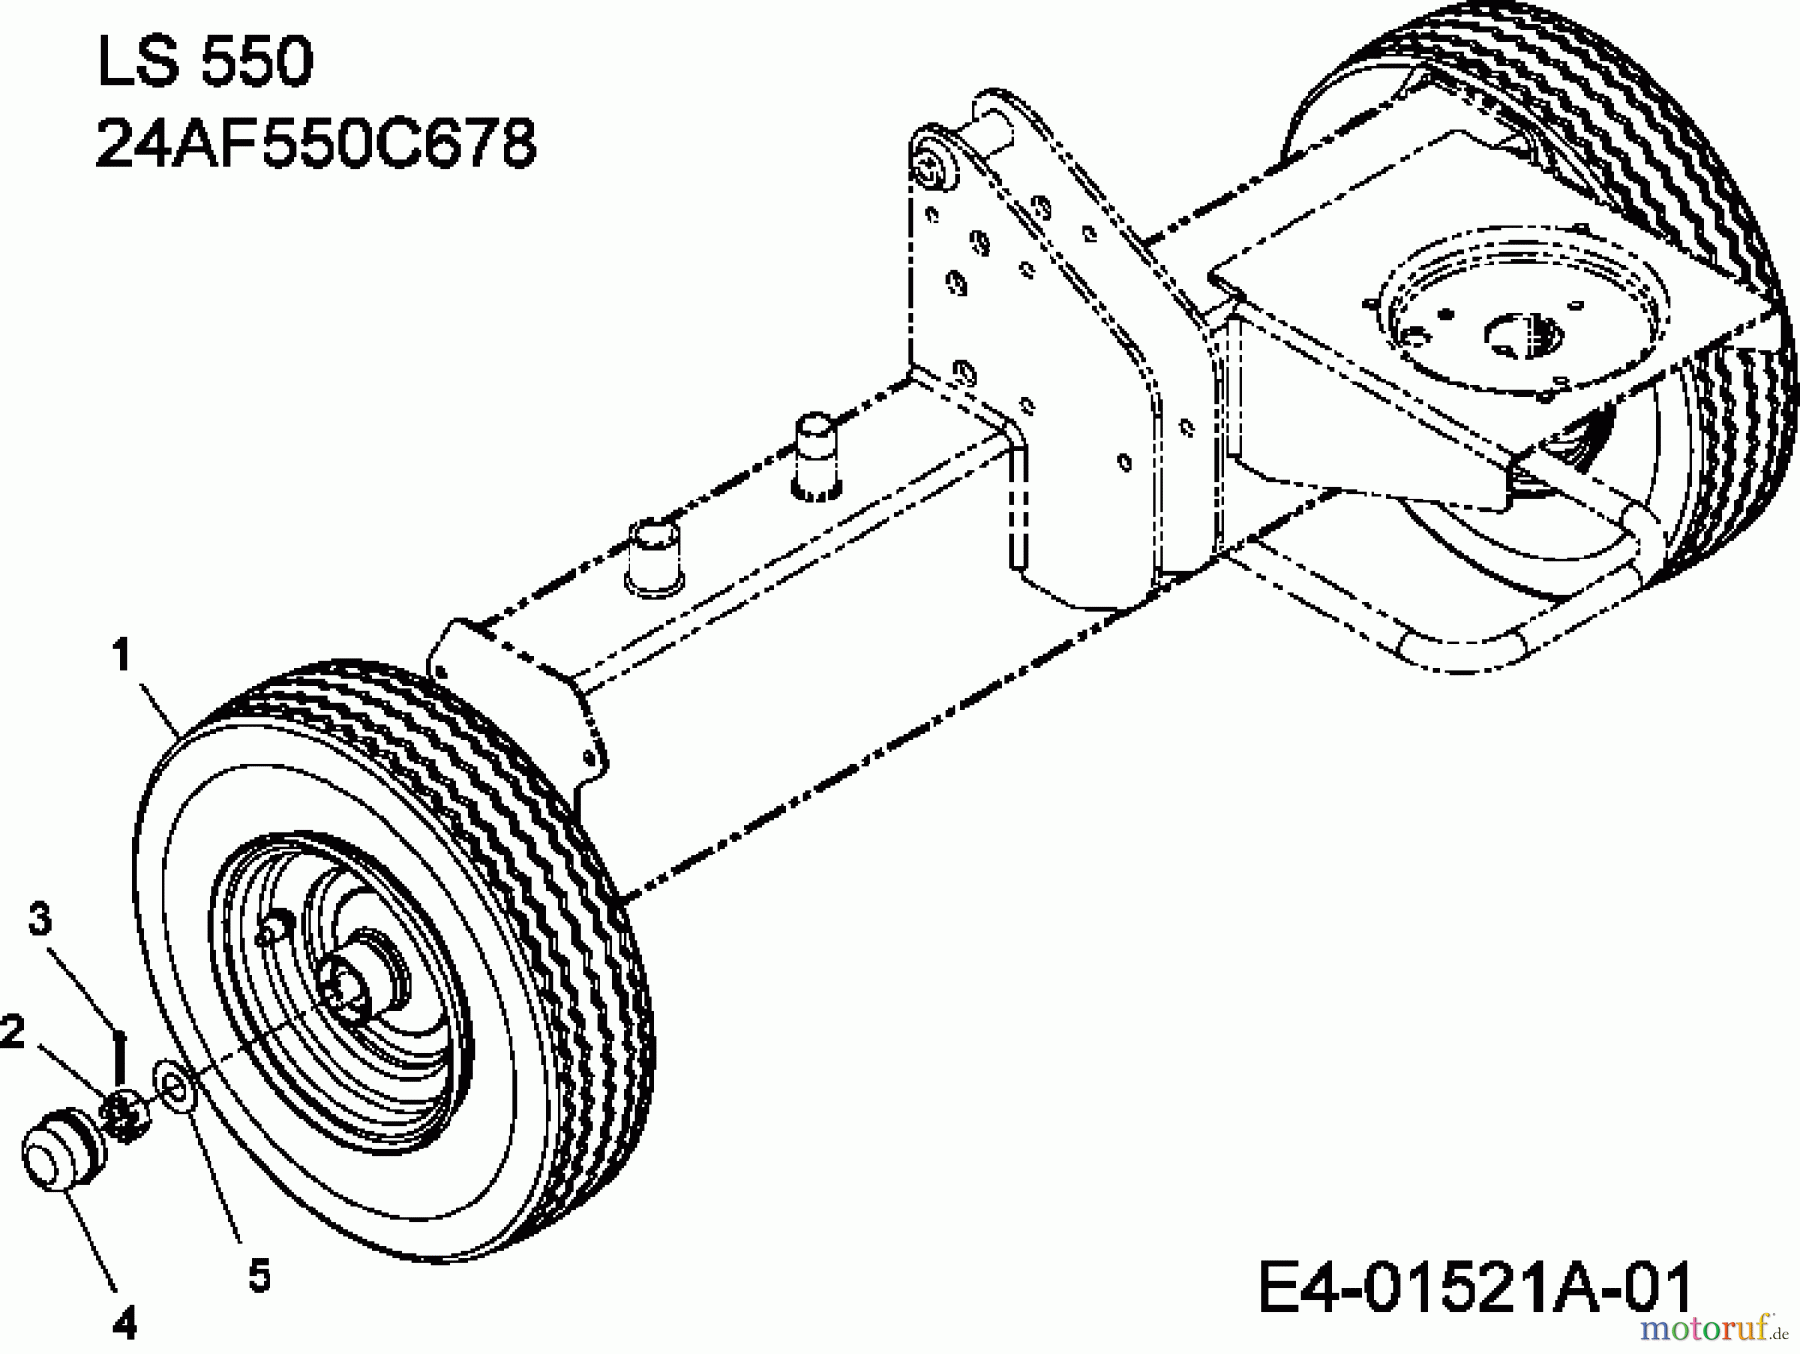  MTD Log splitter LS 550 24AF550C678  (2011) Wheels